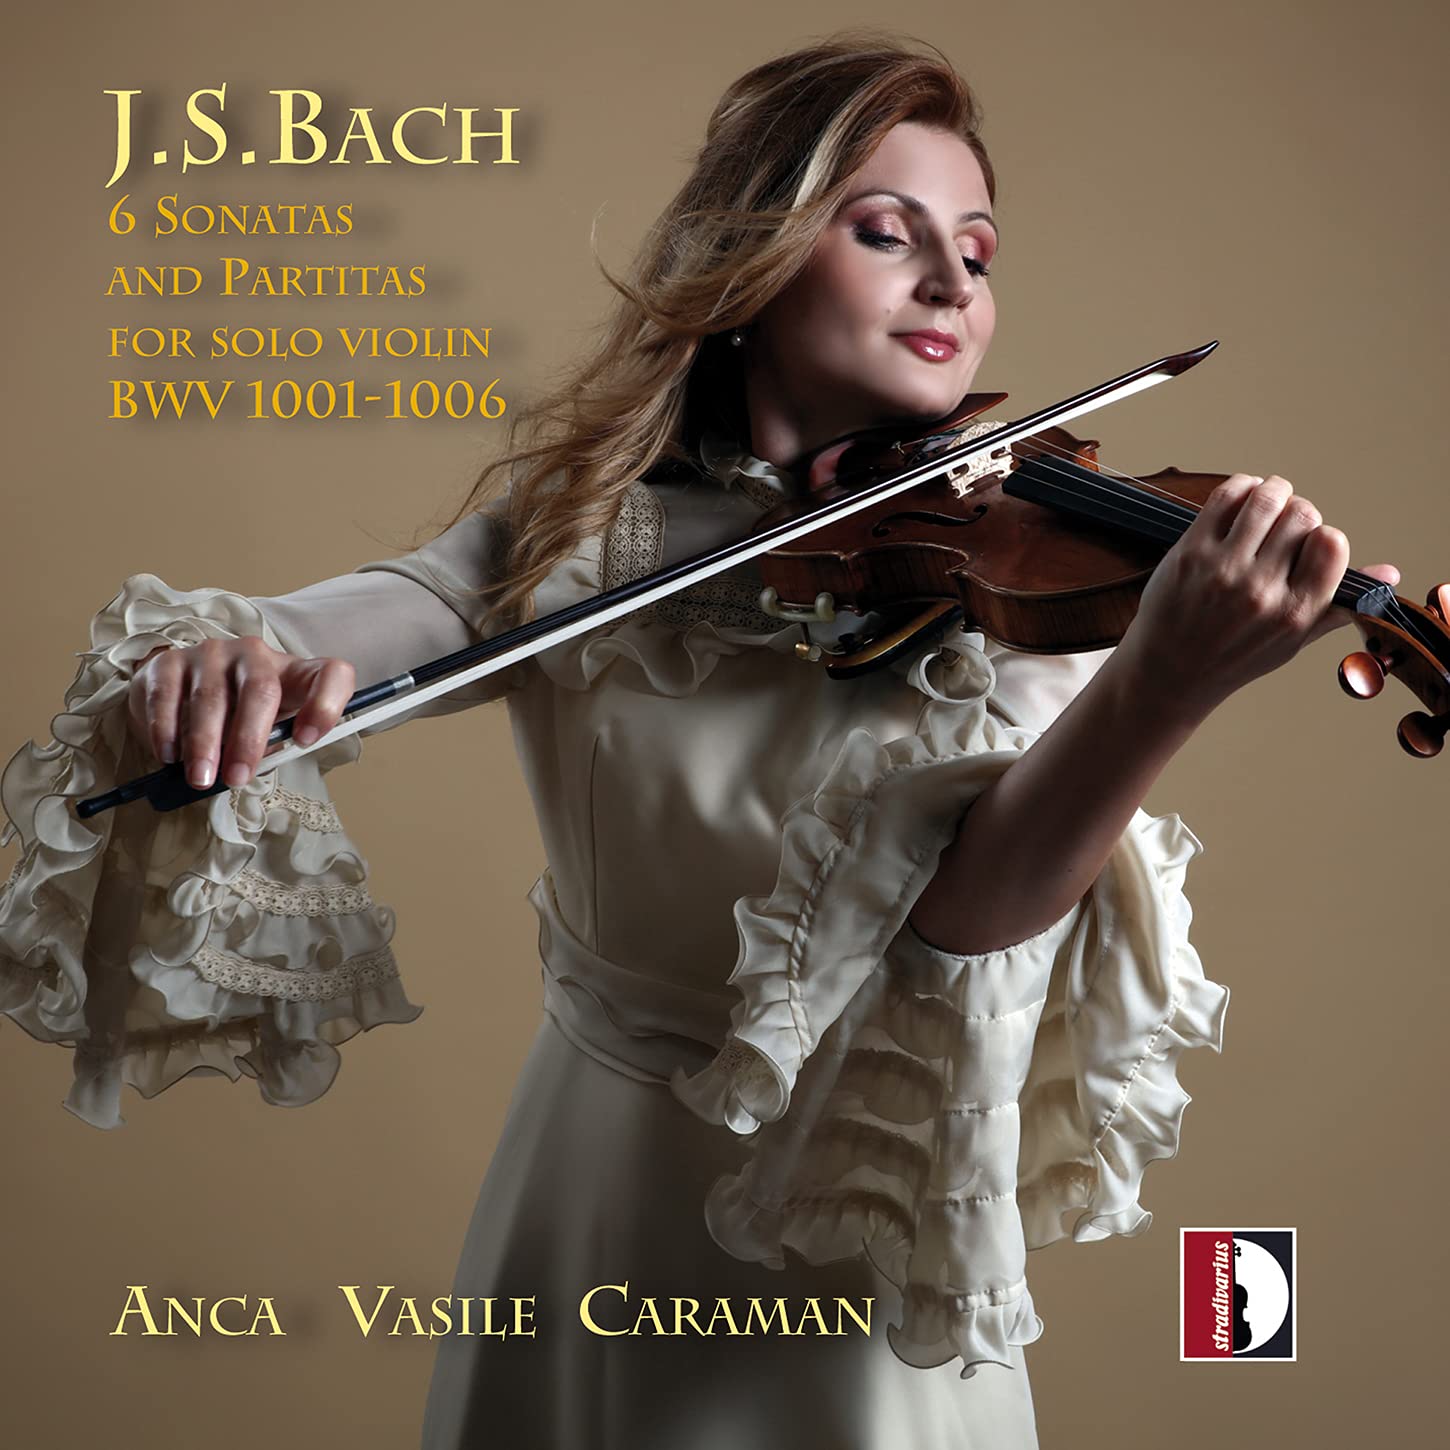 Audio Cd Johann Sebastian Bach - 6 Sonatas & Partitas per Solo Violin BWVV 1001-1006 2 Cd NUOVO SIGILLATO EDIZIONE DEL SUBITO DISPONIBILE